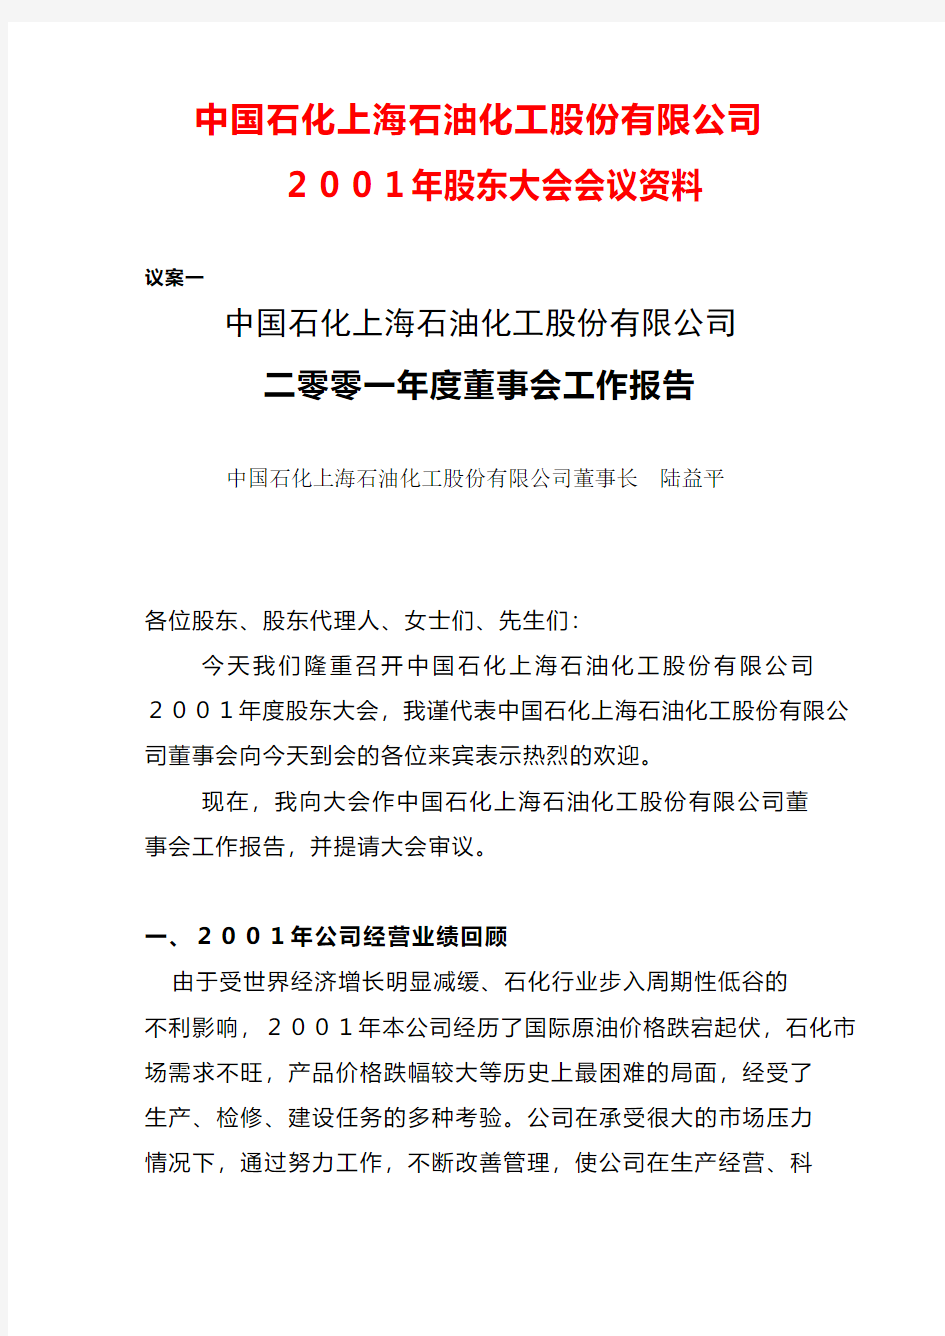 中国石化上海石油化工股份有限公司董事长 陆益平